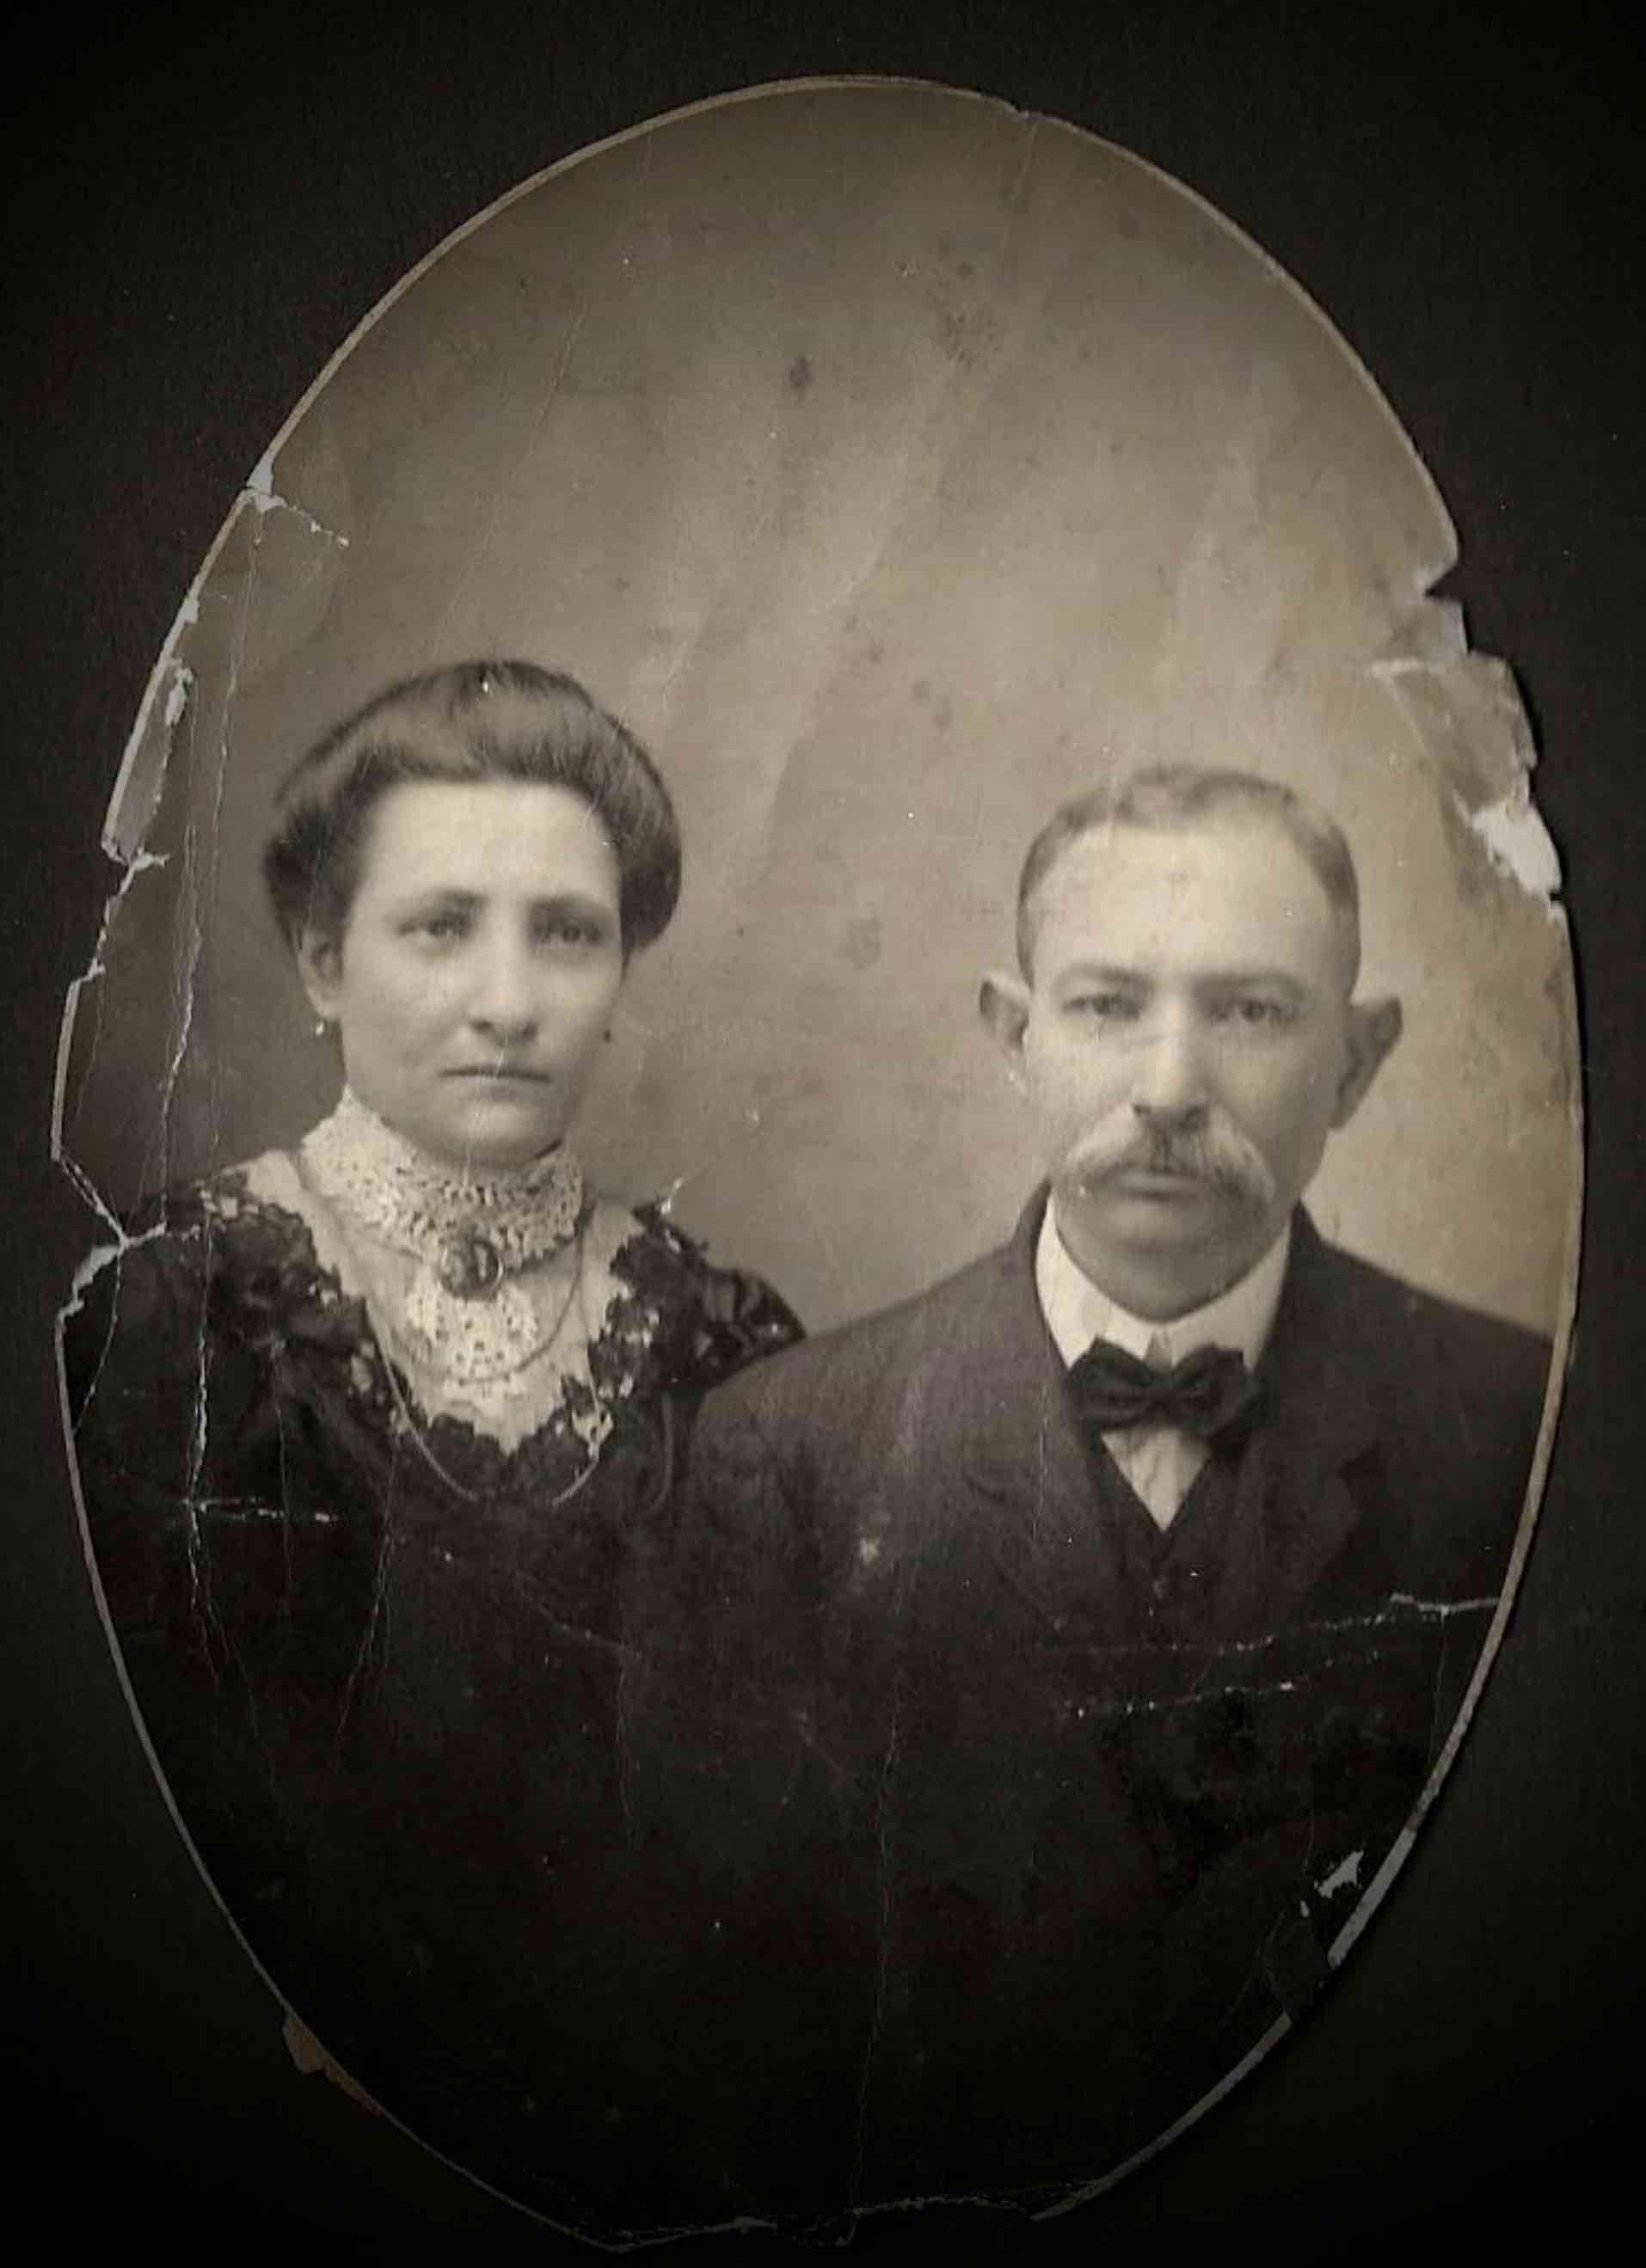 Bertha married Shmuel, (Simon or Samuel) probably in St Louis in 1883